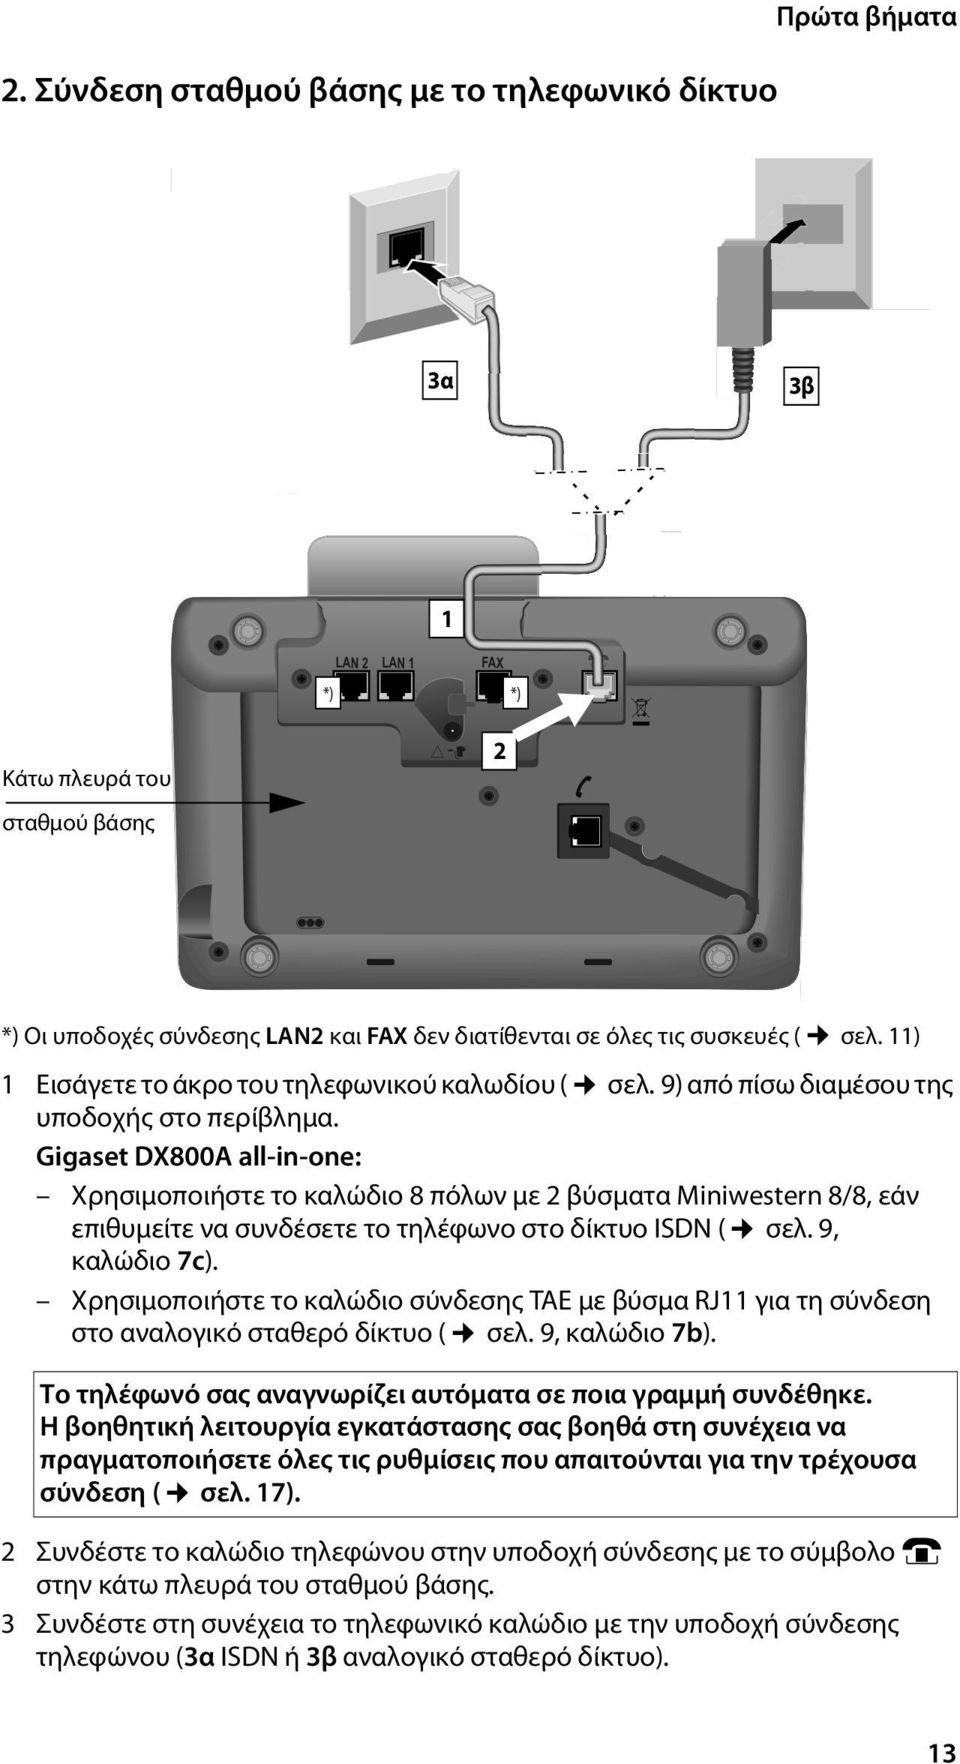 Gigaset DX800A all-in-one: Χρησιμοποιήστε το καλώδιο 8 πόλων με 2 βύσματα Miniwestern 8/8, εάν επιθυμείτε να συνδέσετε το τηλέφωνο στο δίκτυο ISDN ( σελ. 9, καλώδιο 7c).